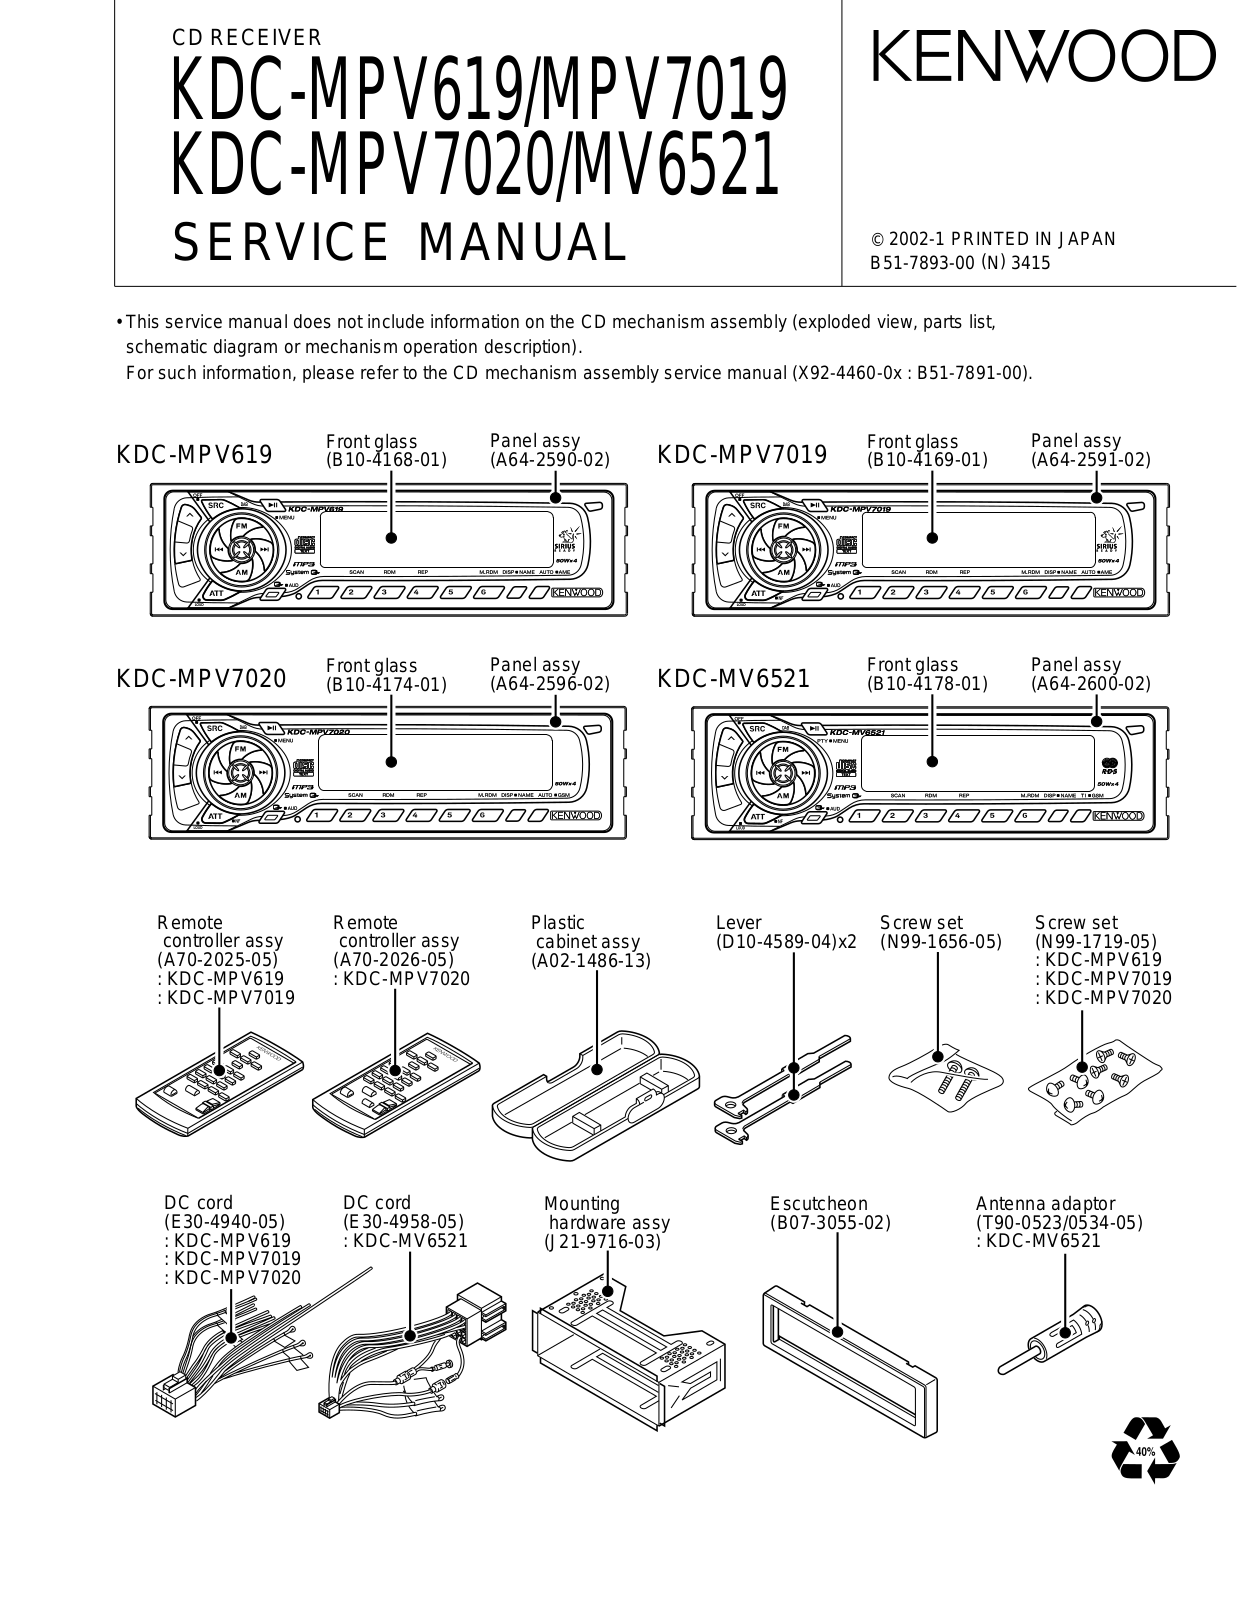 DAEWOO KDC-MPV619, KDC-MPV7019, KDC-MPV7020, KDC-MV6521 Service Manual